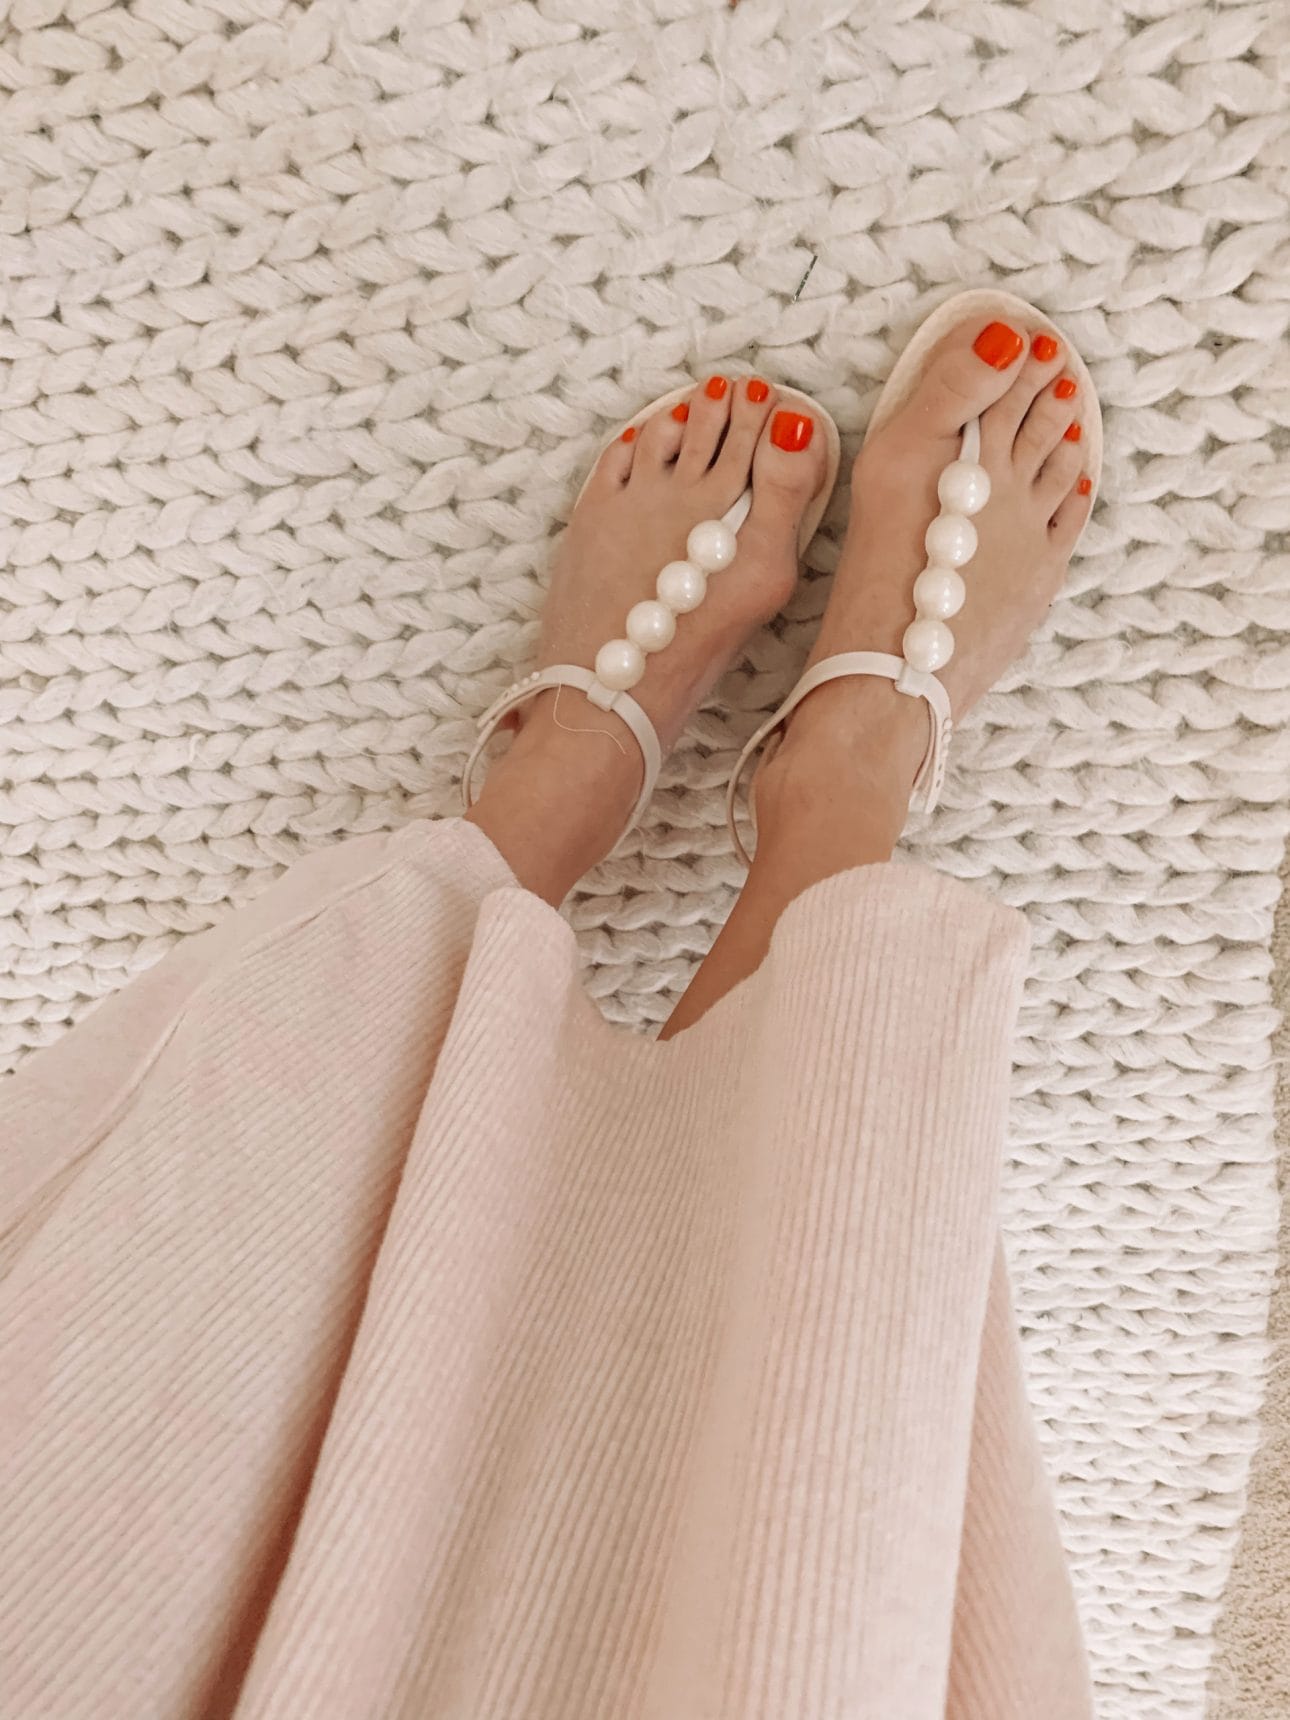 Amazon Fashion - White Sandals